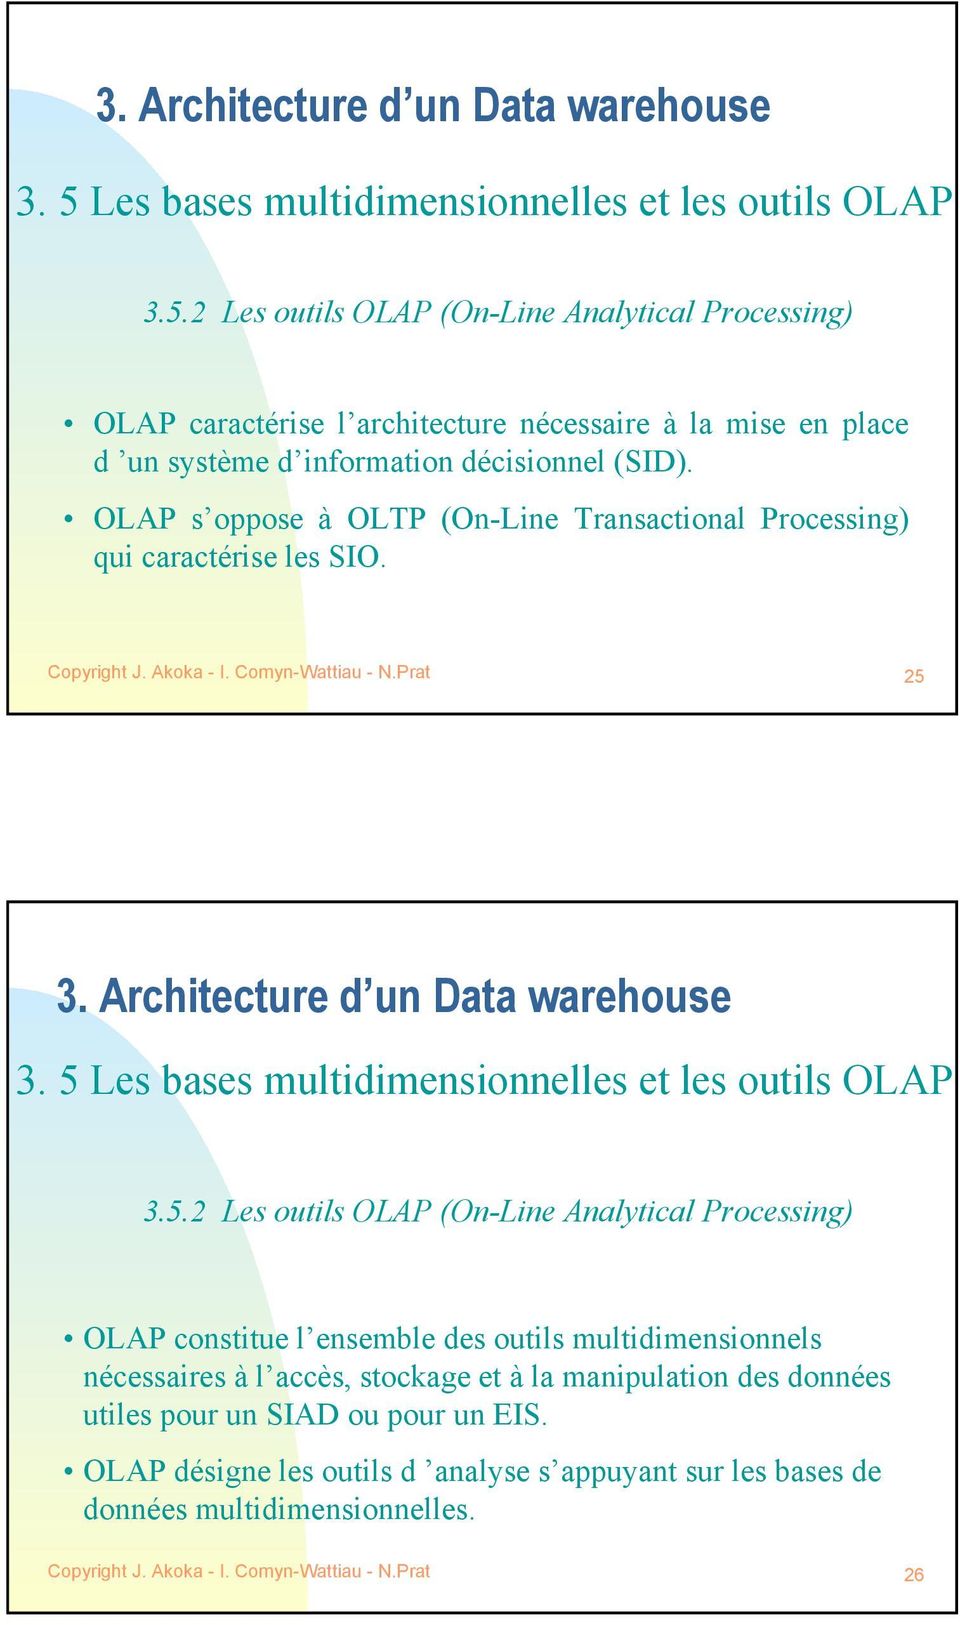 5 Les bases multidimensionnelles et les outils OLAP 3.5.2 Les outils OLAP (On-Line Analytical Processing) OLAP constitue l ensemble des outils multidimensionnels nécessaires à l accès, stockage et à